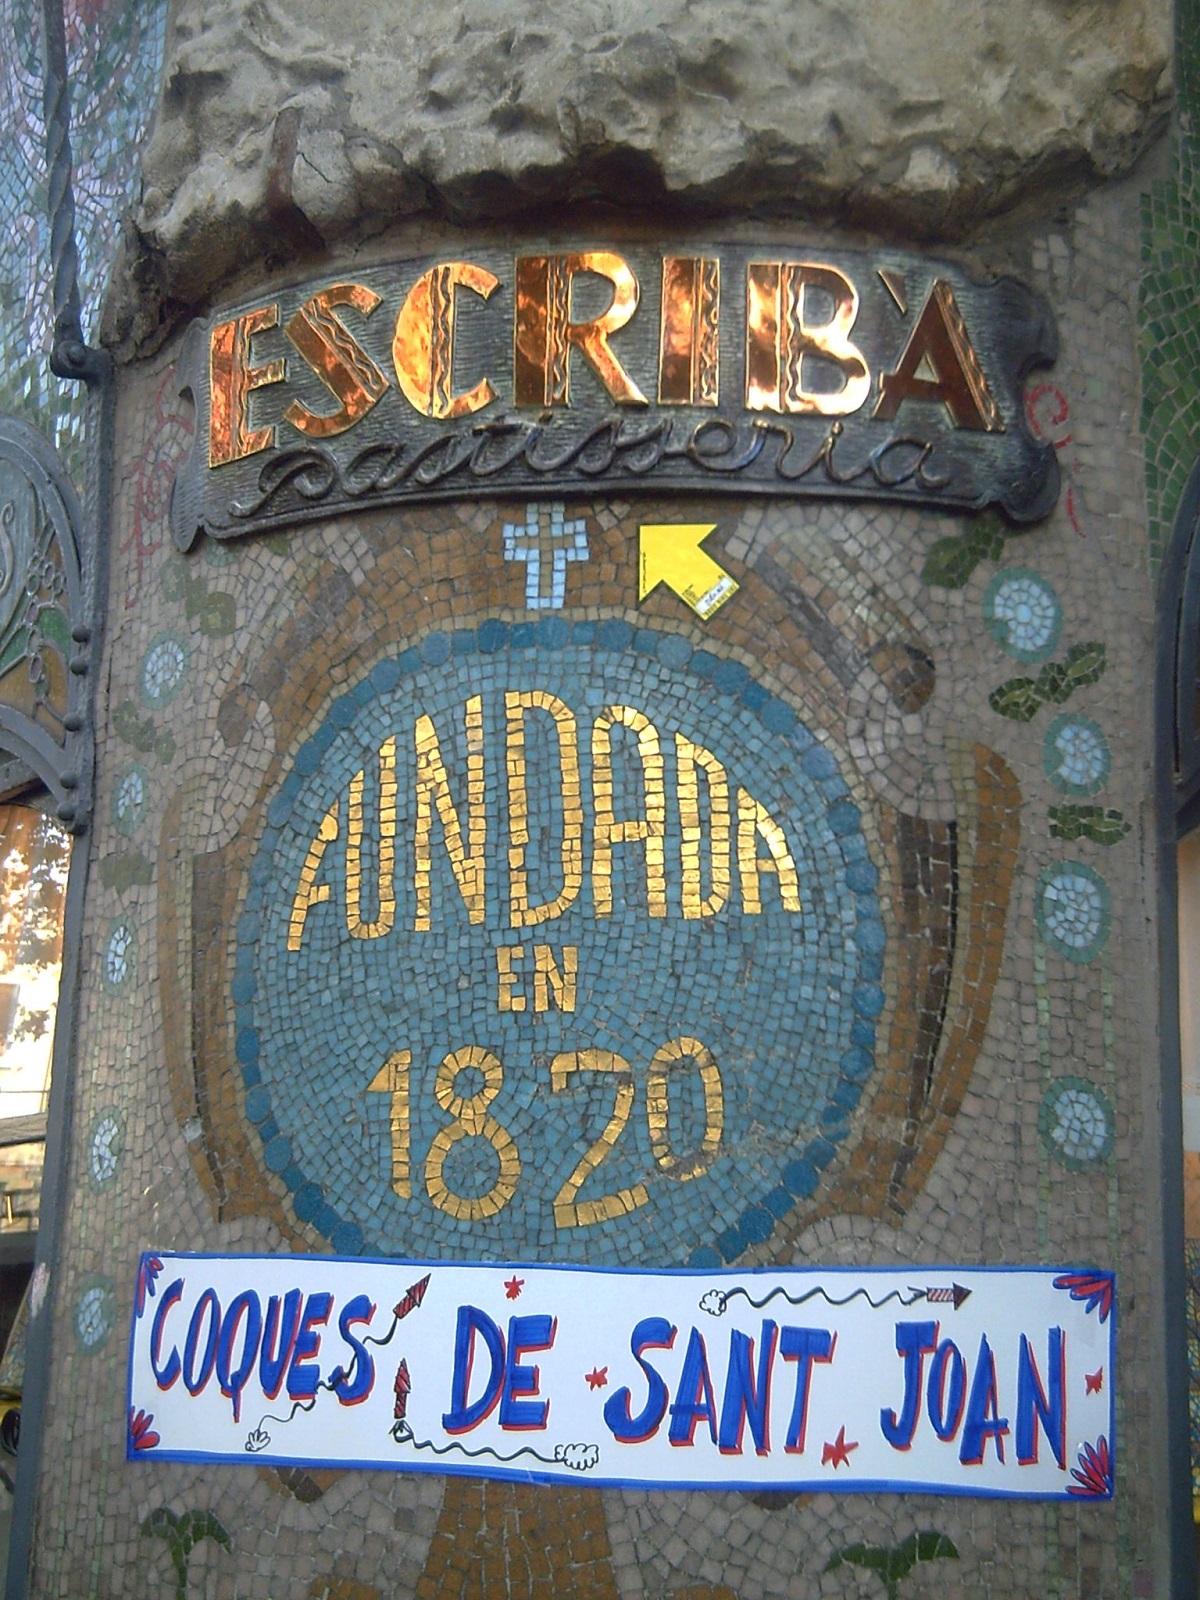 Facade of Barcelona's pastry bakery, Pasteleria Escriba